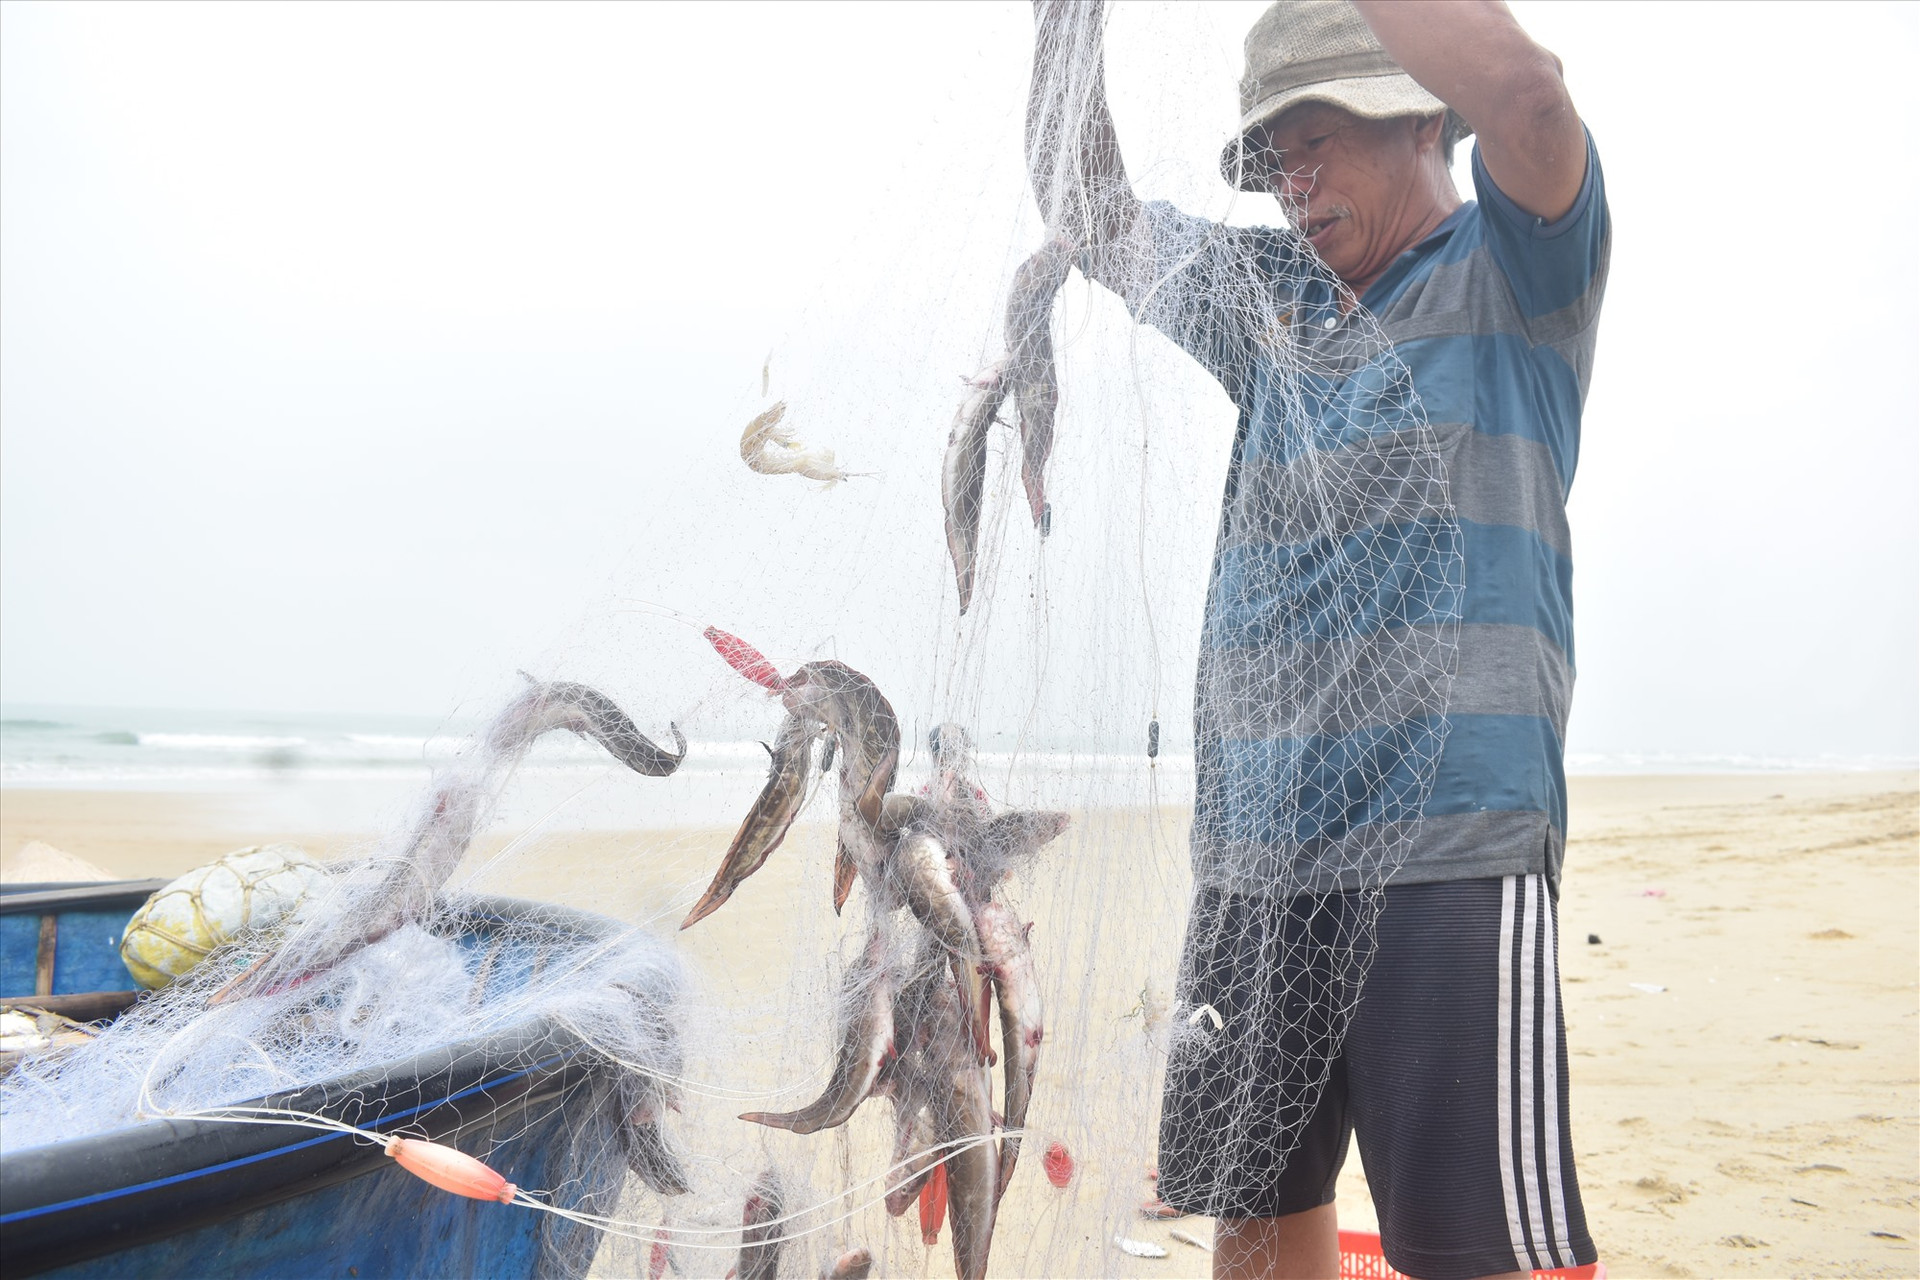 Mùa biển động lưới của ngư dân không chỉ mắc cá khoai mà còn mắc nhiều loại cá trích, ngát, ghẹ, tôm…